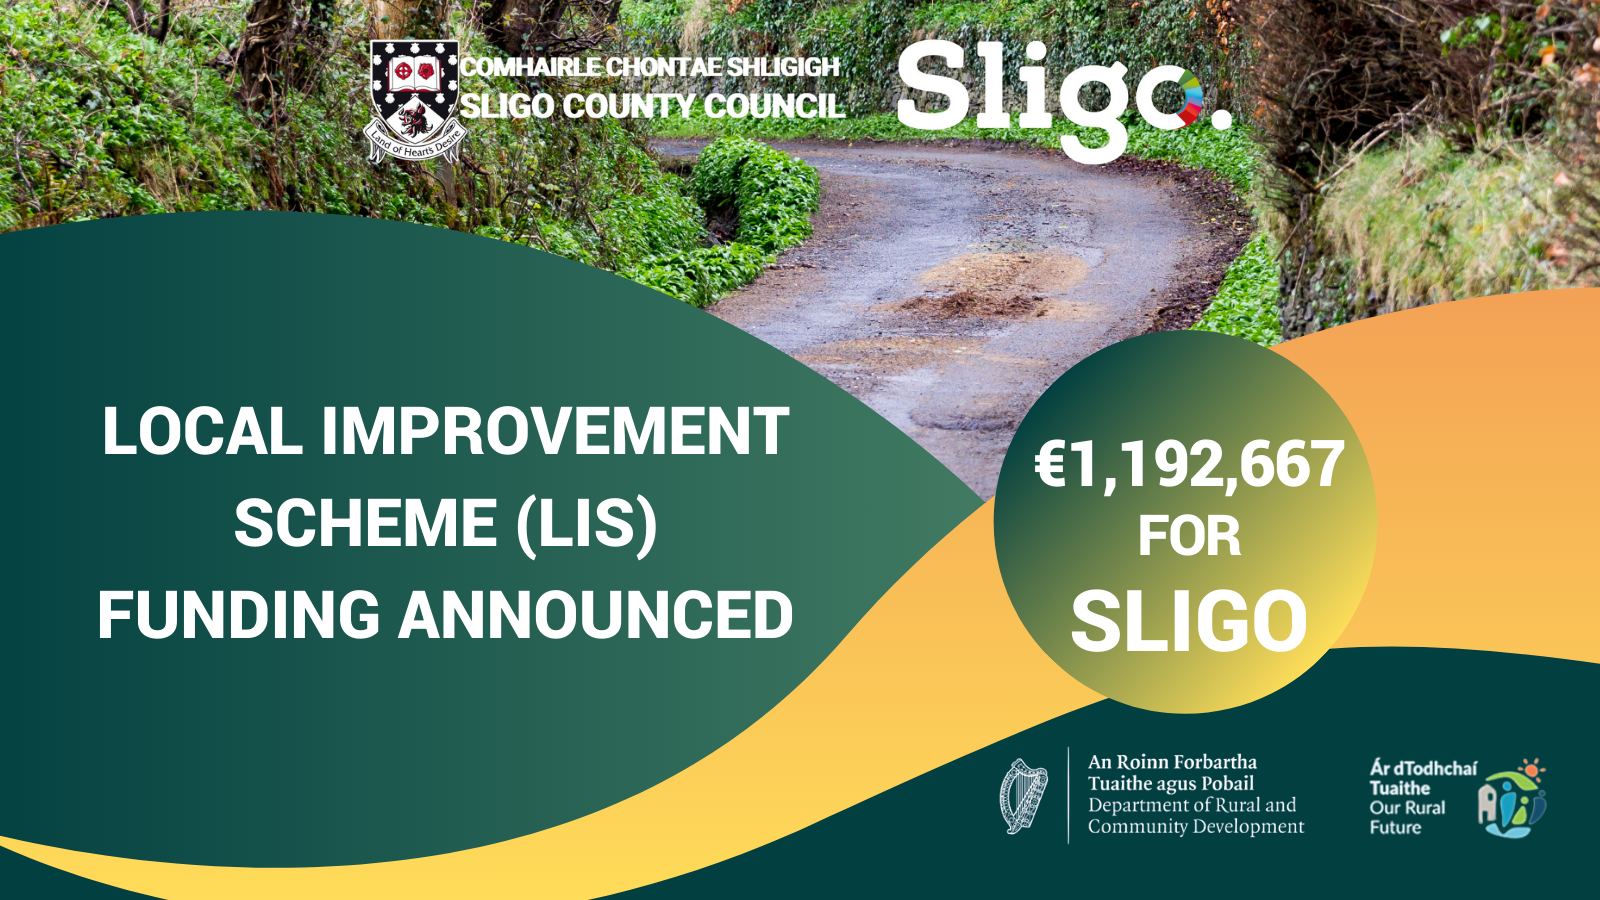 €1,192,667 Local Improvement Scheme (LIS) funding announced for Sligo
